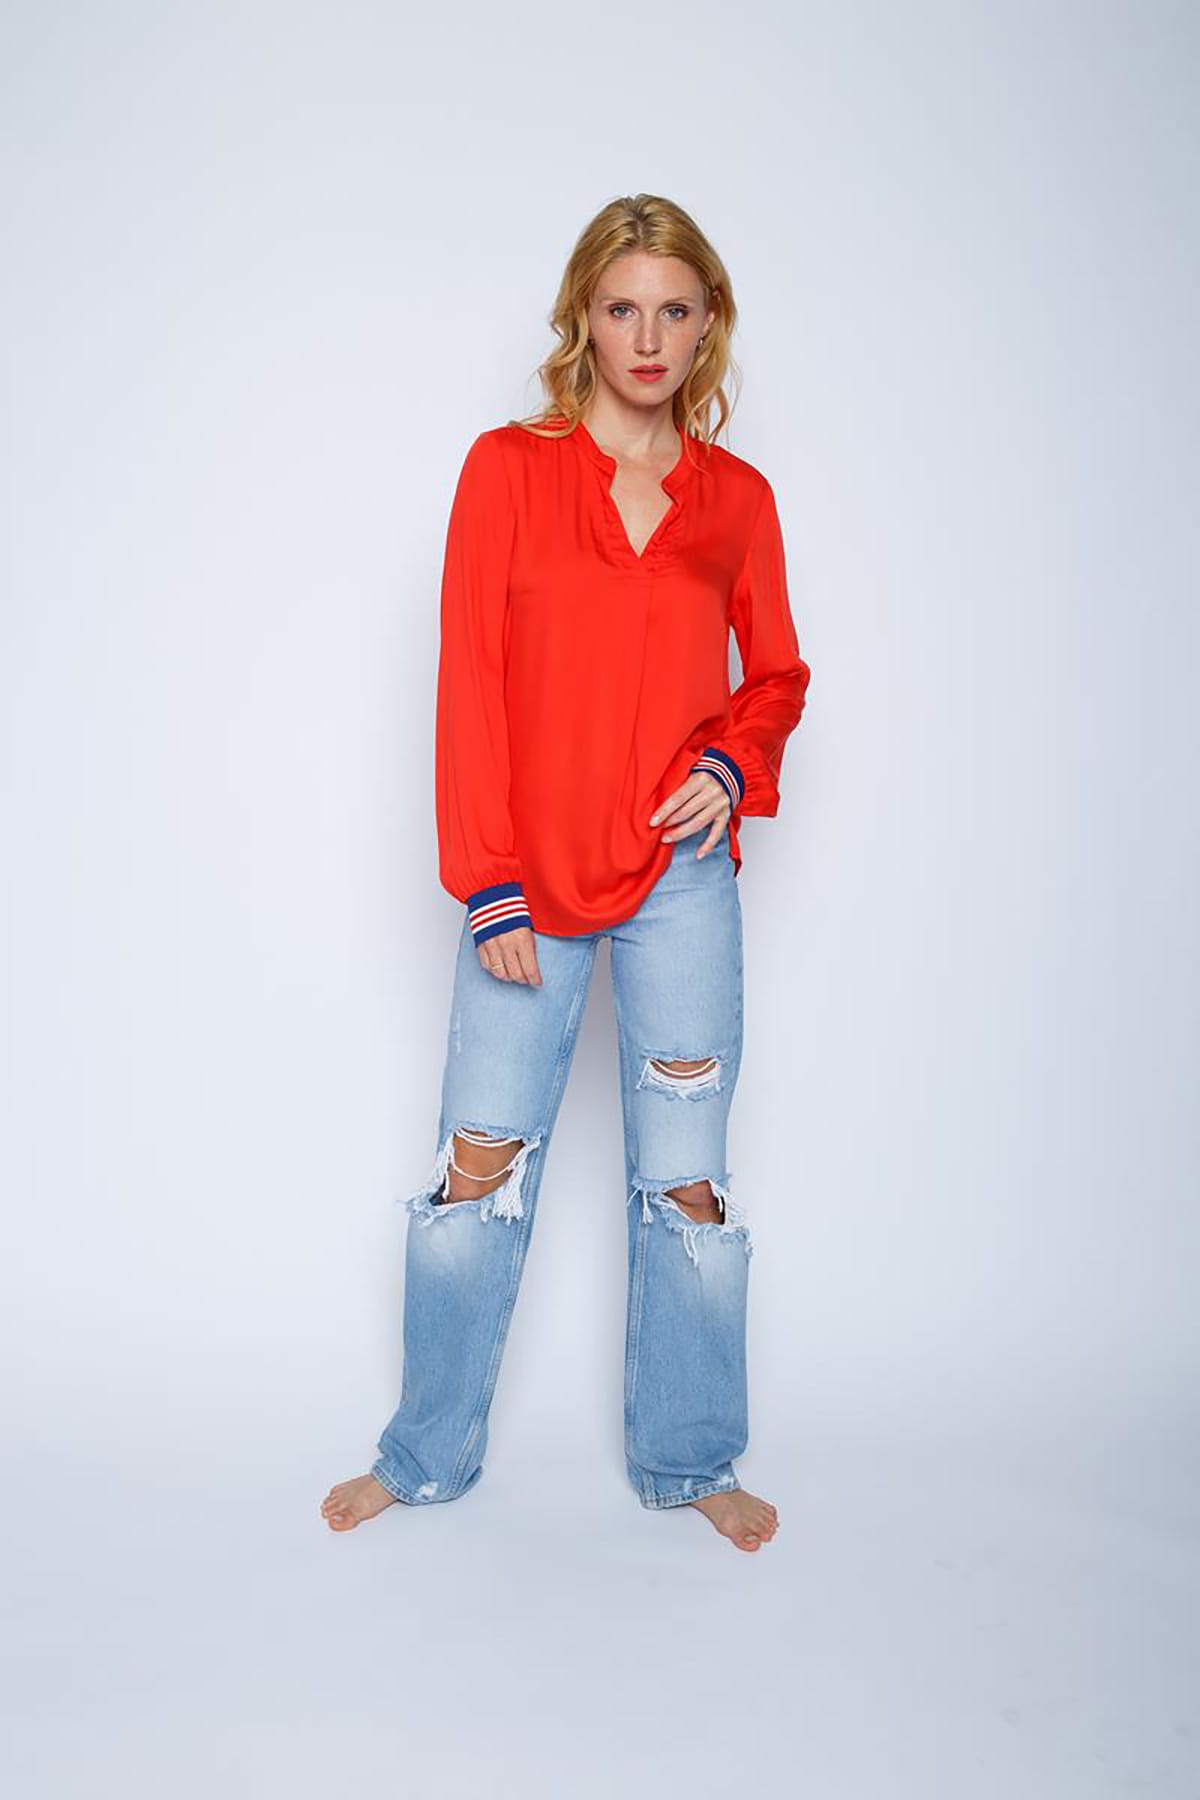 Lockere Shirtbluse mit V-Ausschnitt und Strickmanschetten Red Bluse Emily van den Bergh 